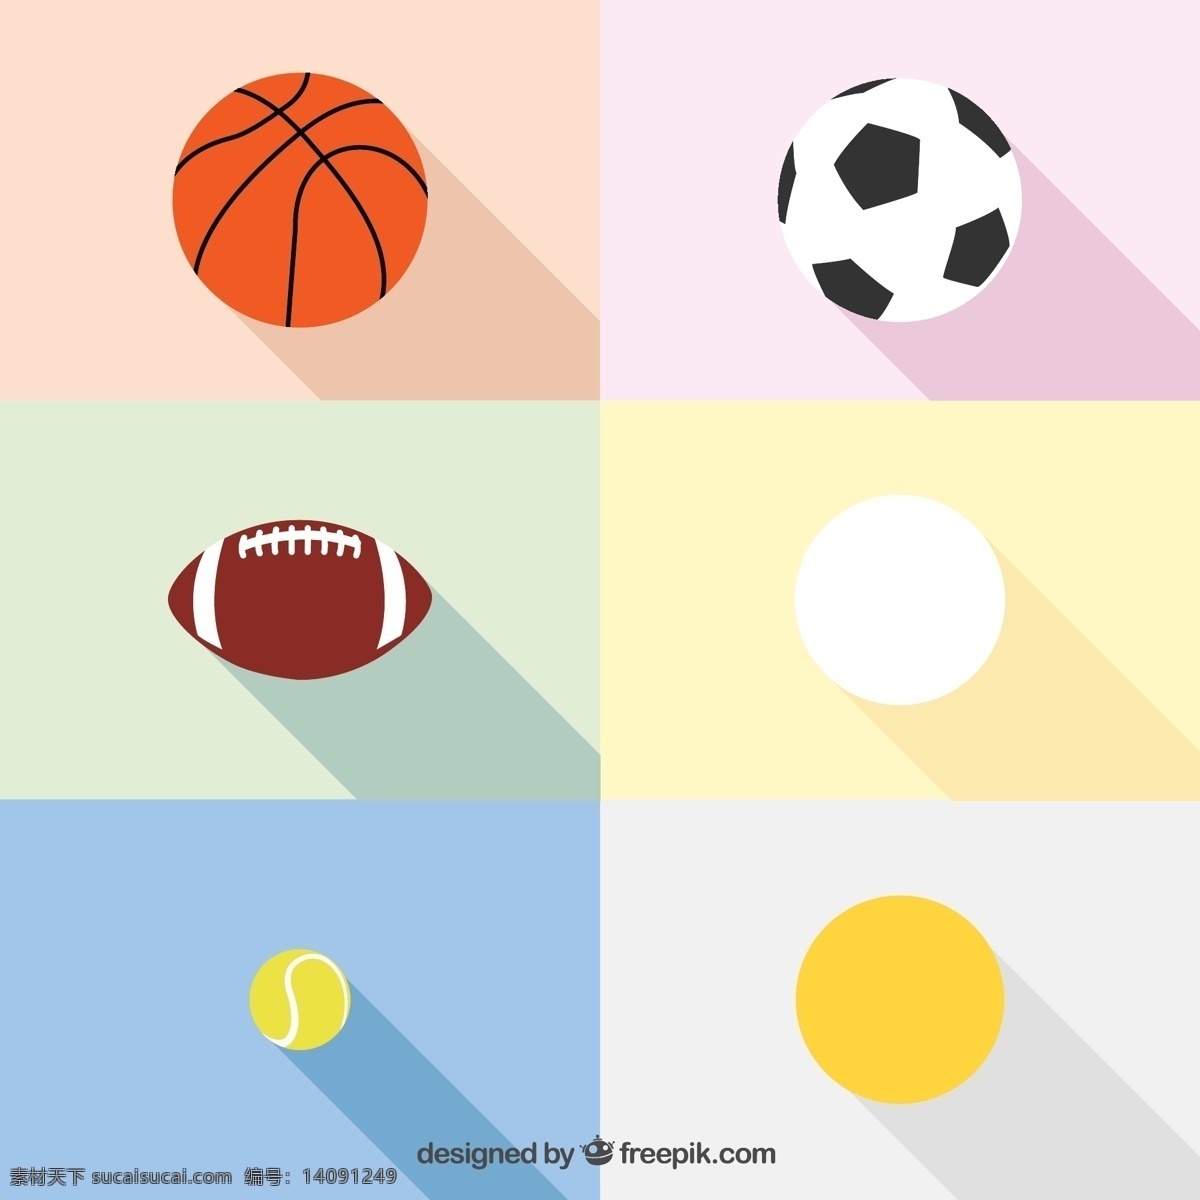 精致 球类 图标 矢量 体育用品 球 球具 足球 篮球 橄榄球 排球 高尔夫球 网球 矢量图